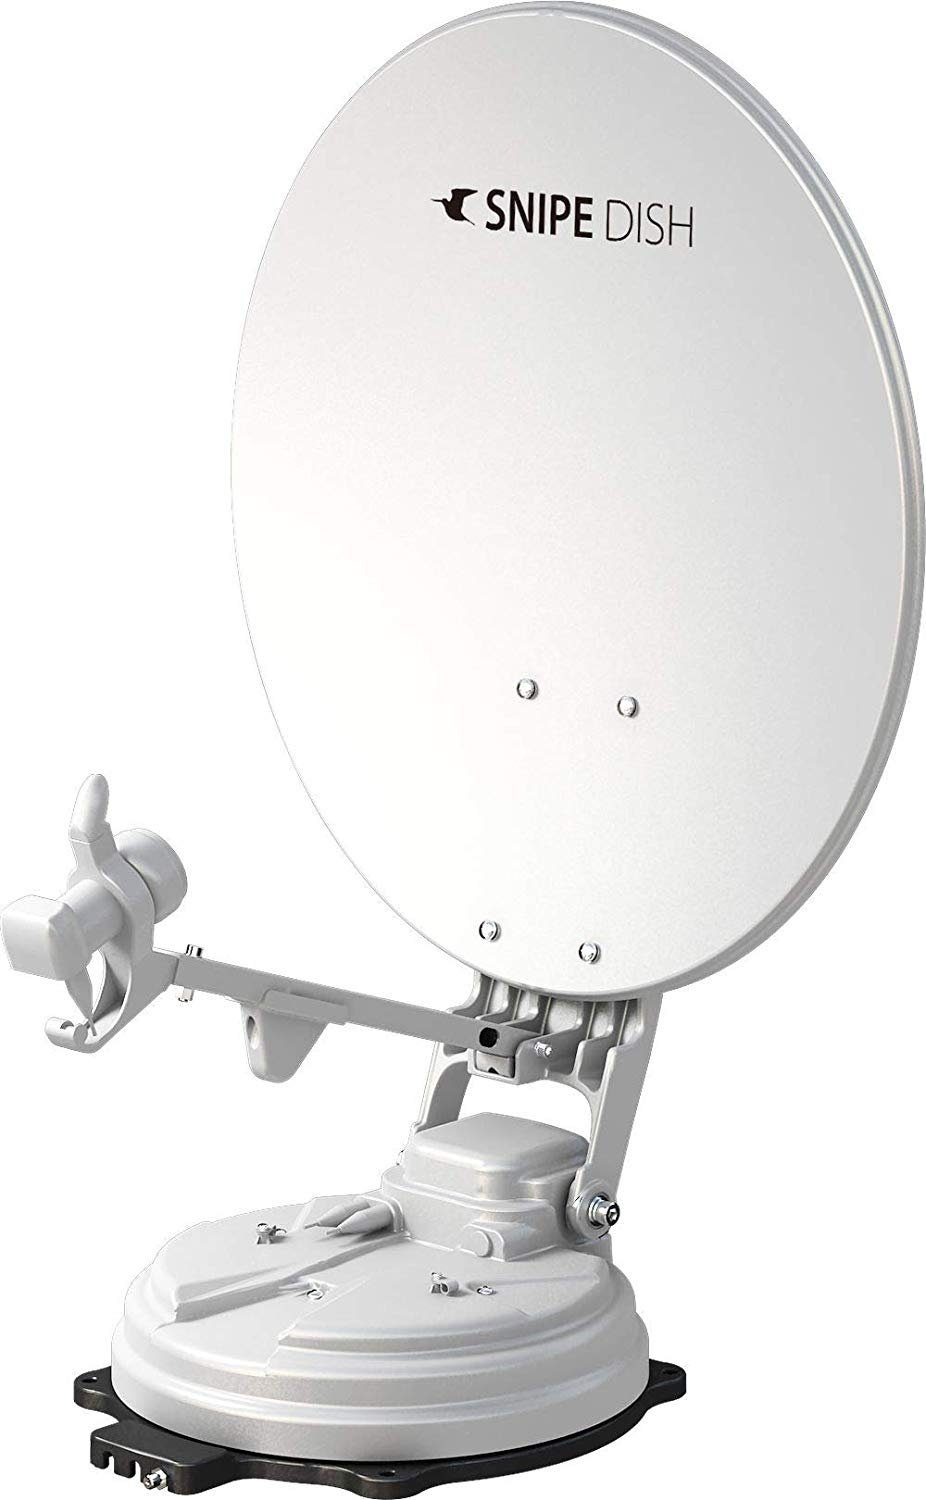 Selfsat Selfsat Snipe Dish 65cm Camping Single zur vollautomatische Sat-Anlage Satellitenantenne